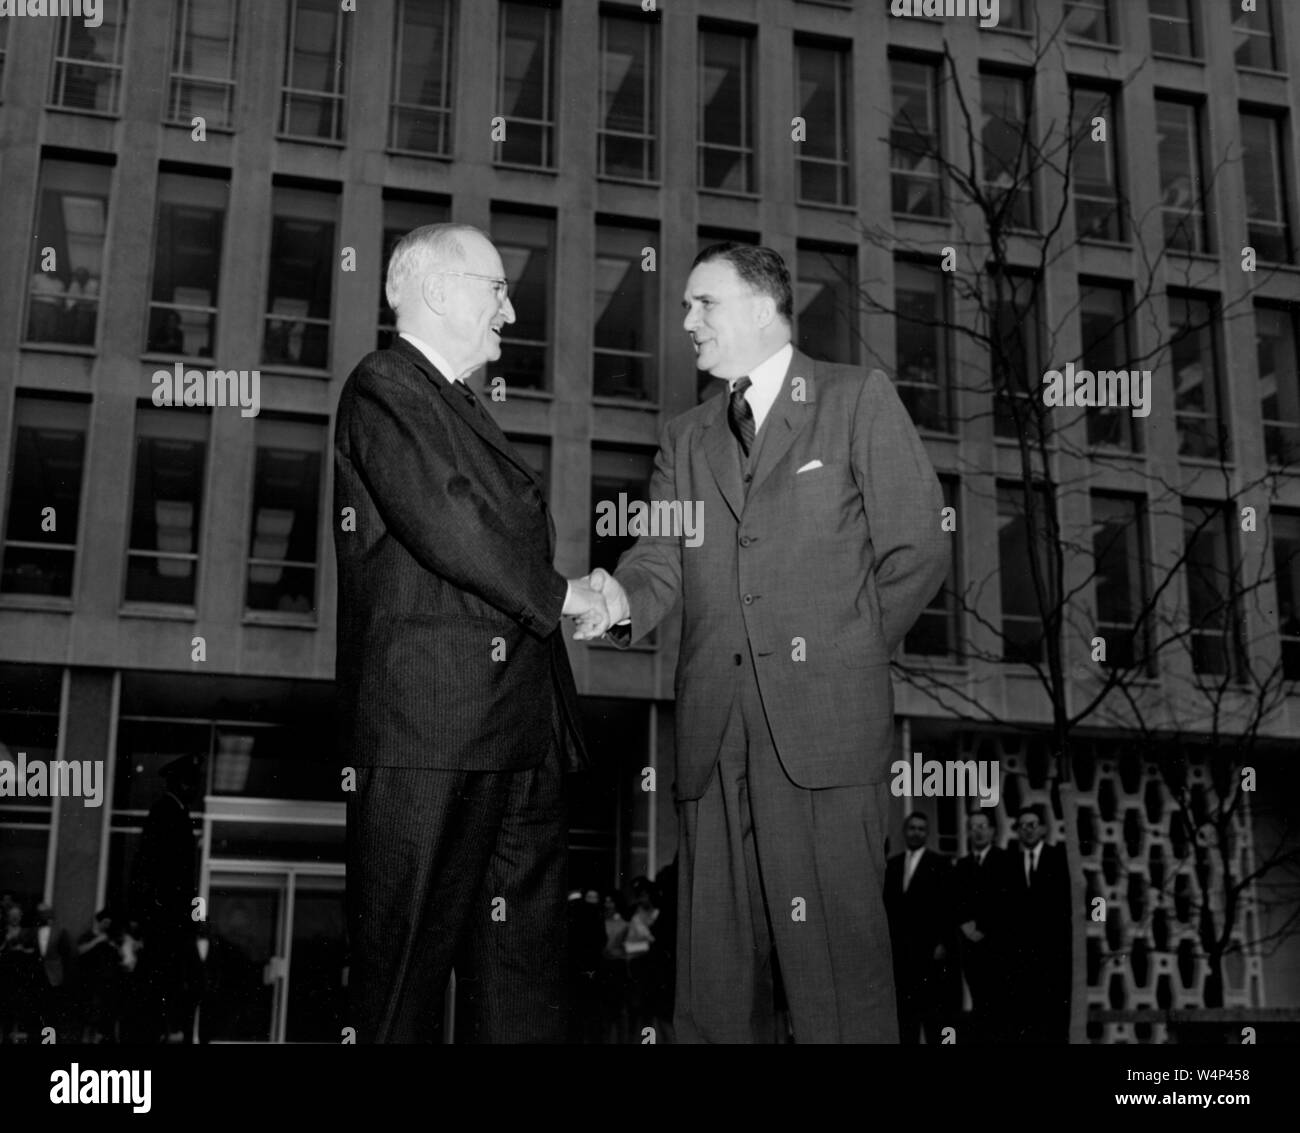 Le président Harry S. Truman, serre la main avec l'administrateur de la NASA James E Webb lors d'une visite présidentielle à l'ouverture récente du nouveau quartier général de la NASA à Washington, District de Columbia, le 3 novembre 1961. Droit avec la permission de la National Aeronautics and Space Administration (NASA). () Banque D'Images